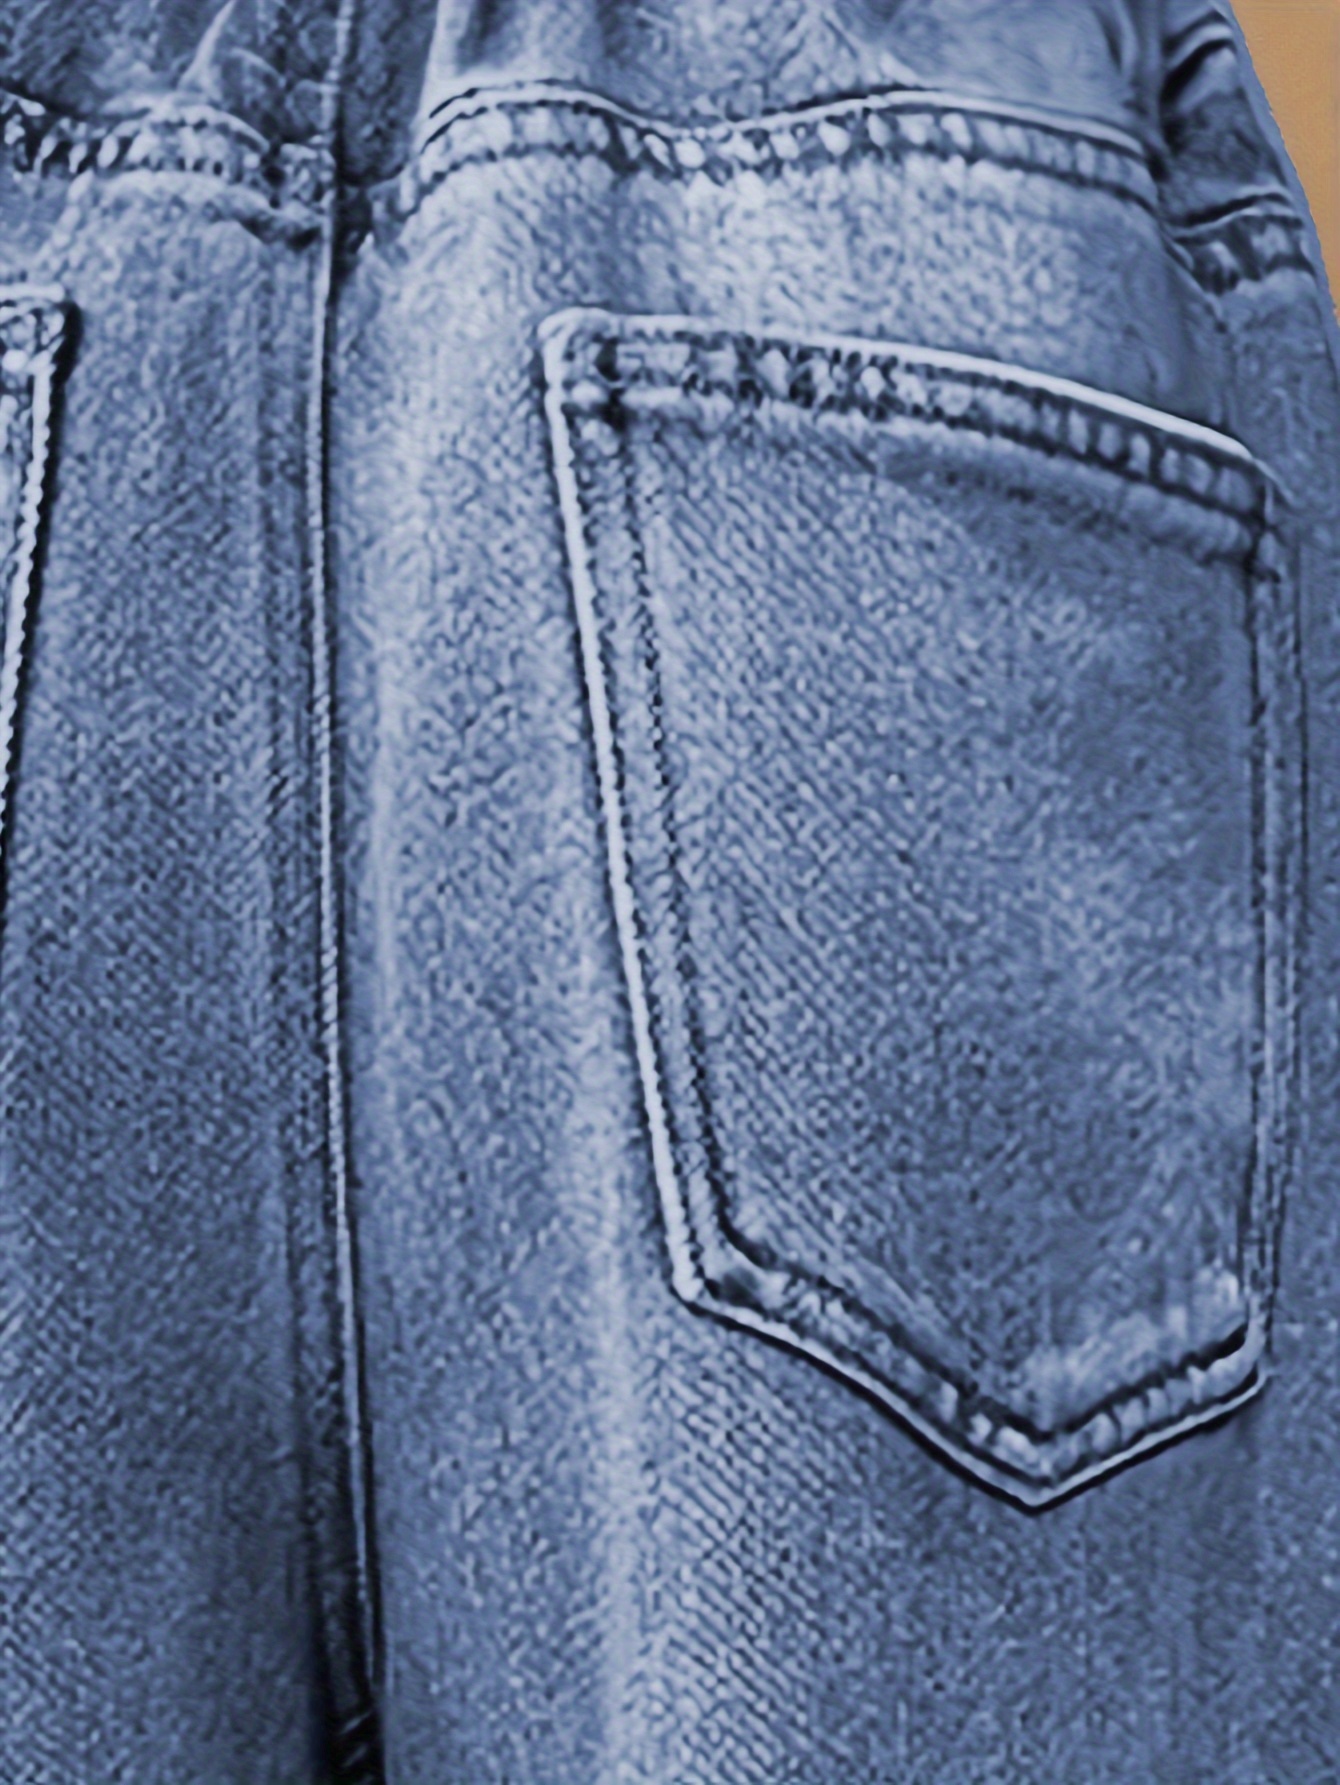 Denim Patch Pattern Design Teen Girls Fashion Loose Pants, 4